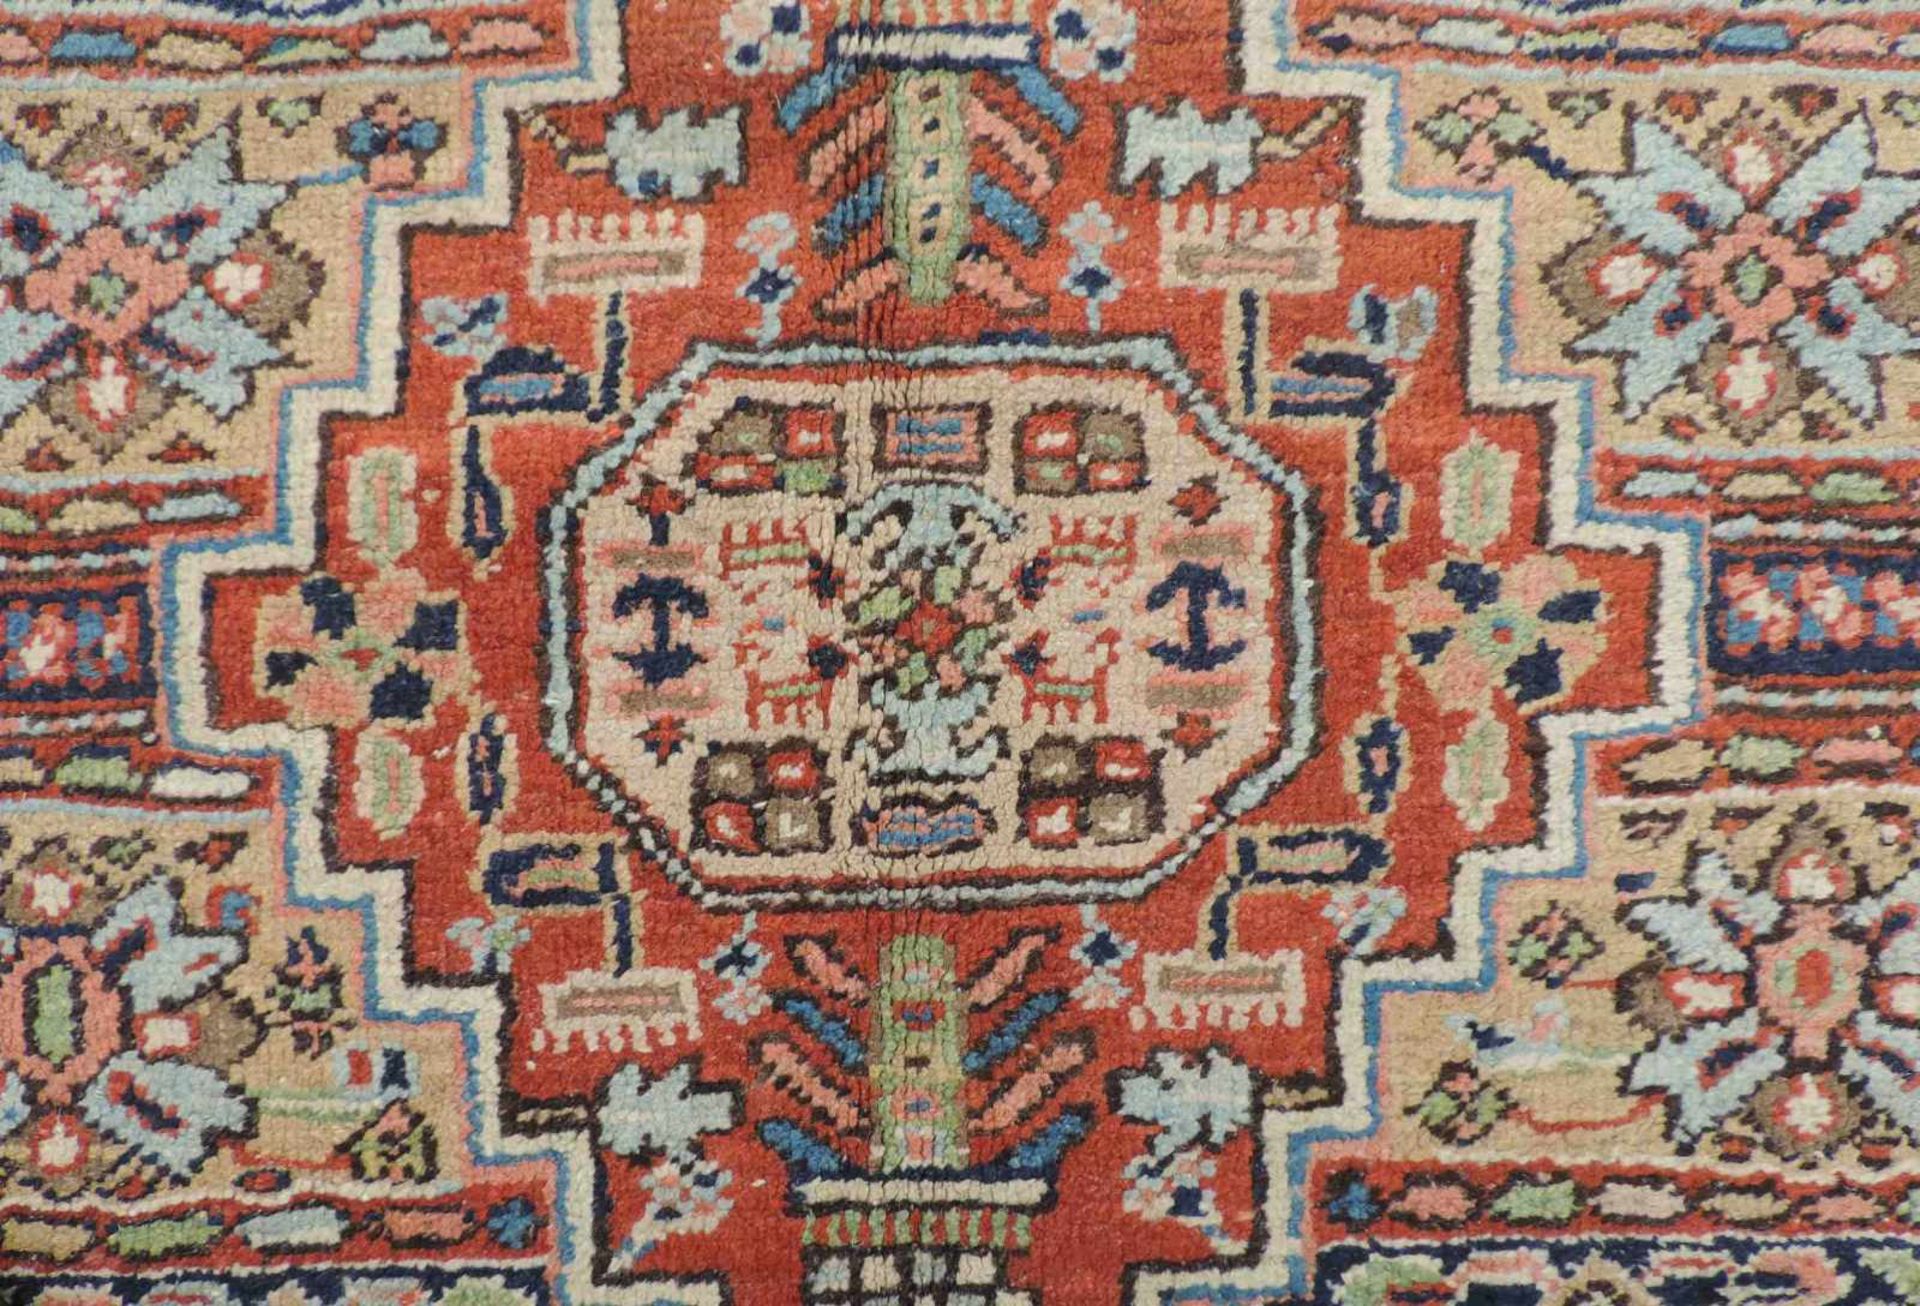 Heris Dorfteppich. Iran. Antik, um 1910. 175 cm x 133 cm. Handgeknüpft. Wolle auf Baumwolle. Wohl - Bild 4 aus 5